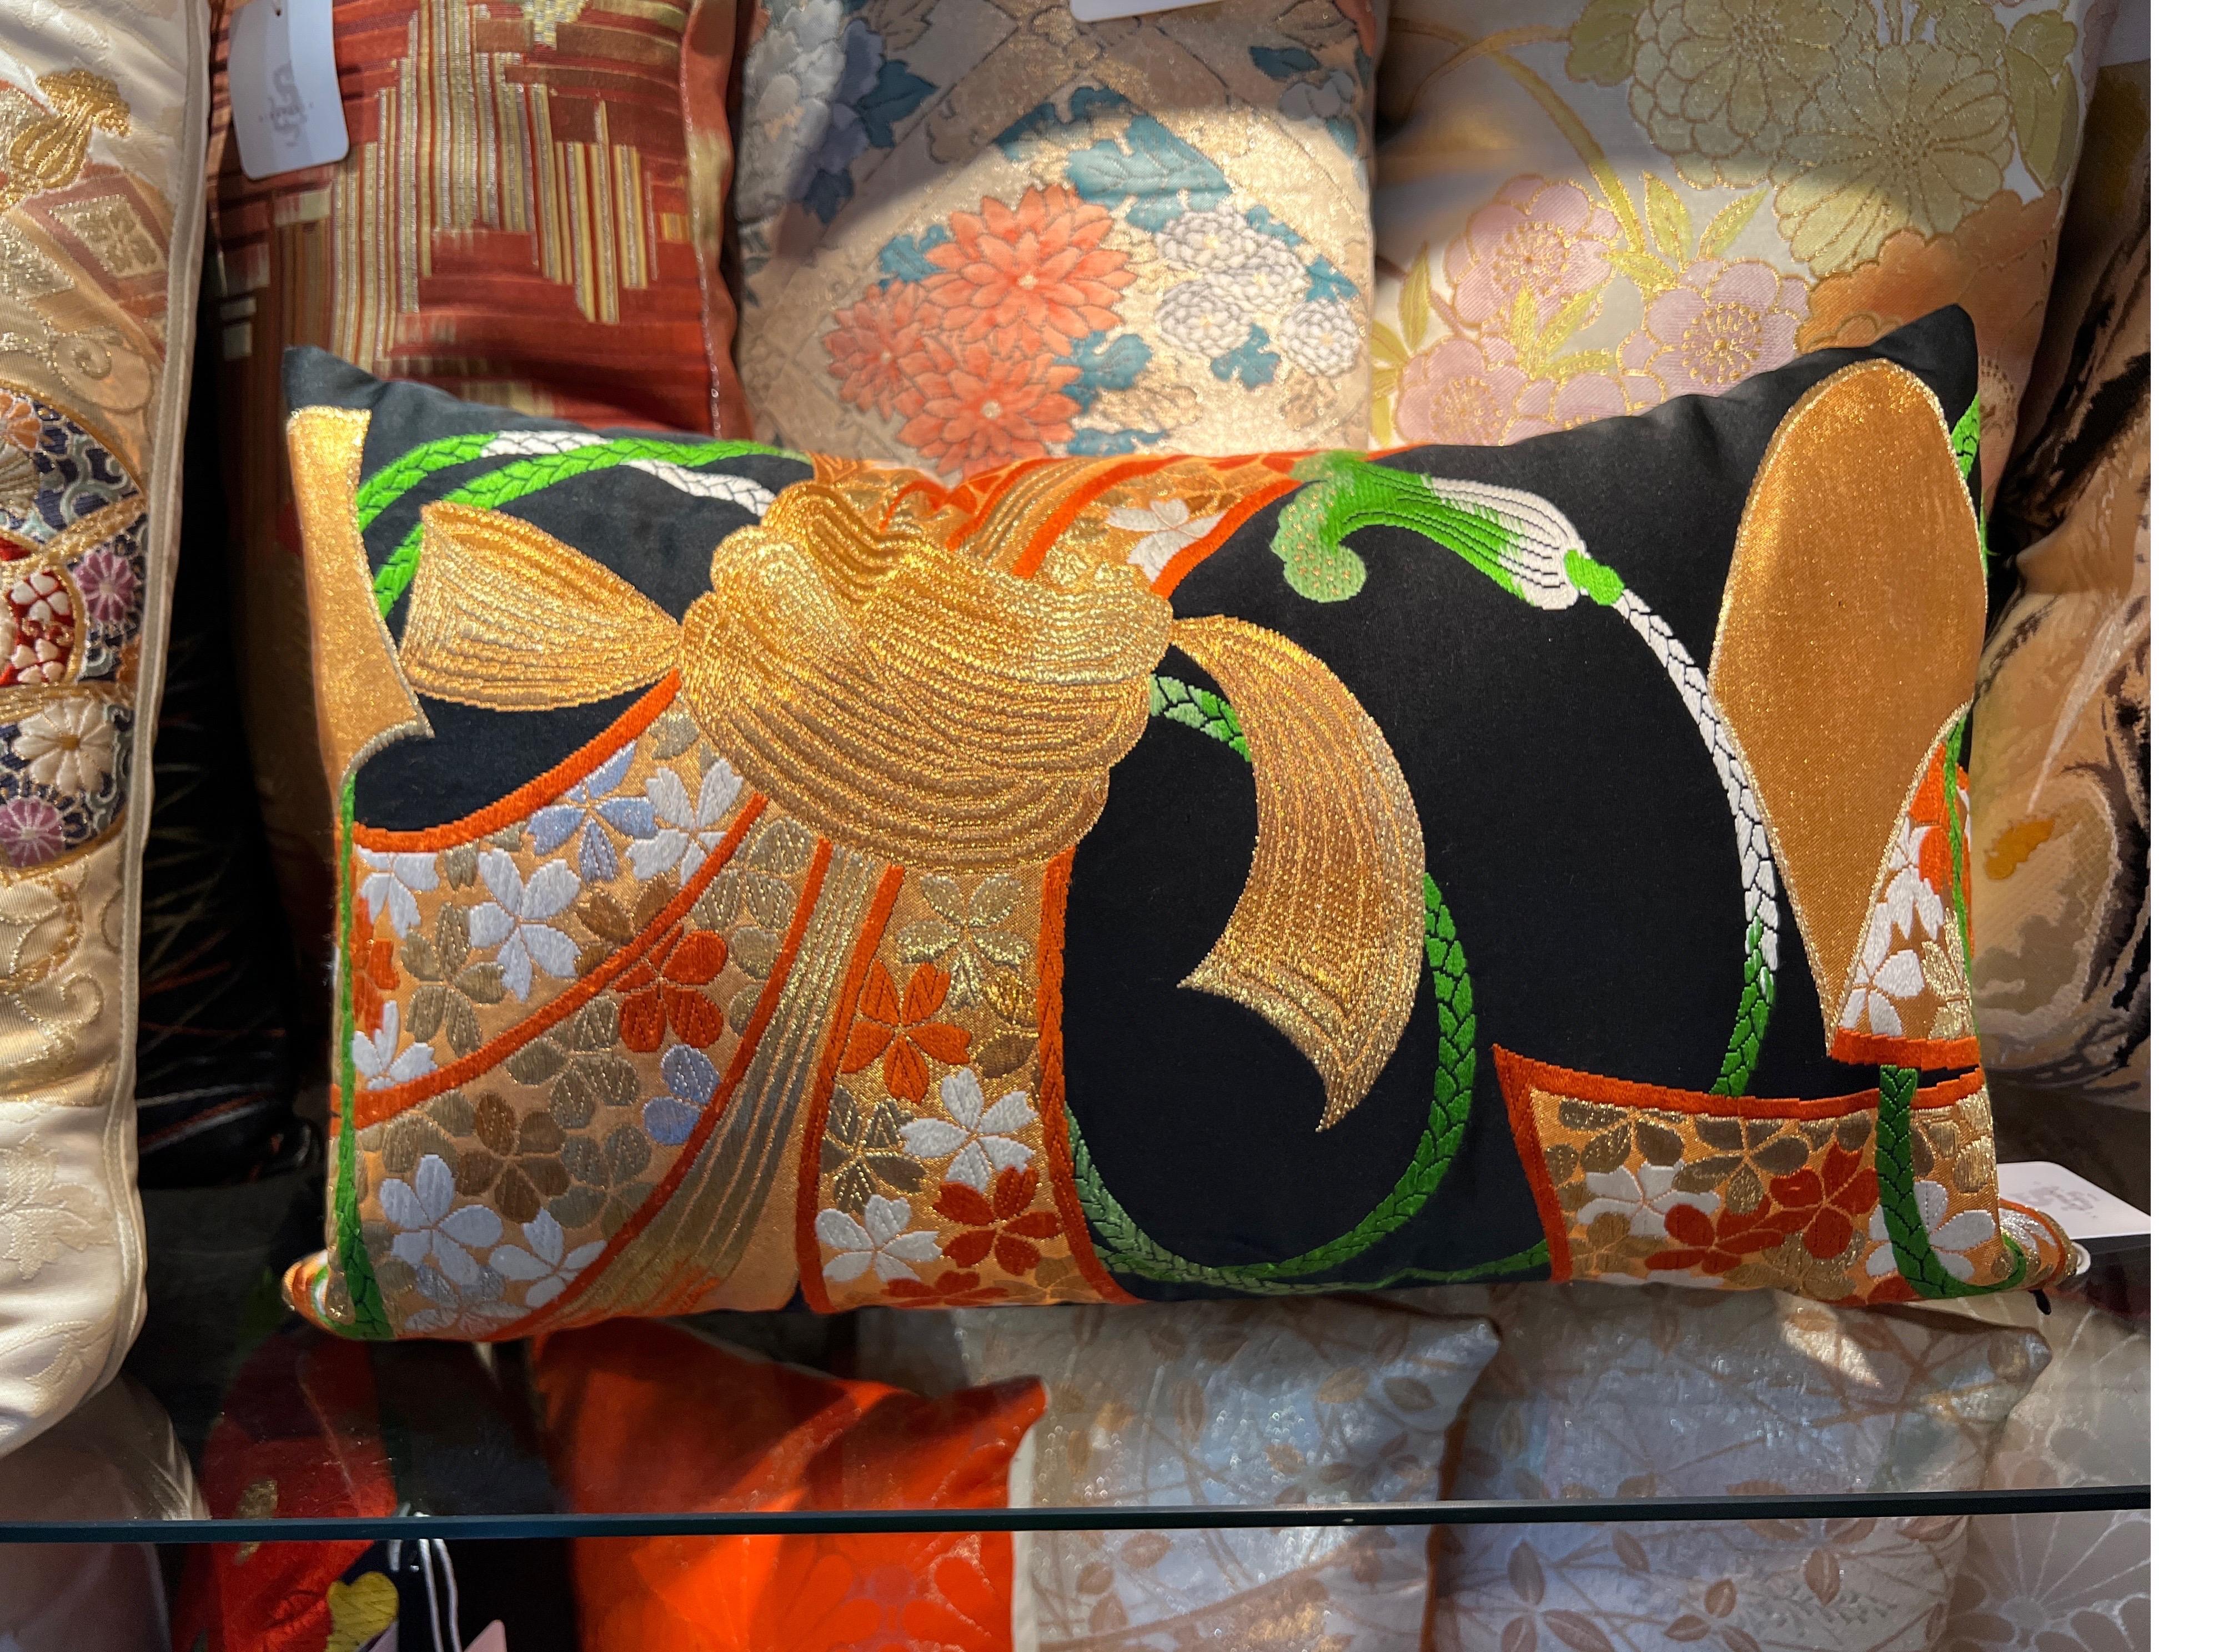 Ein spektakuläres lombardisches Kissen, gewebt aus Seide und Metallfäden.

Die handgefertigten Kissen von Sinapango Interiors Paris, die aus alter Obi-Seide aus dem Nishijin-Distrikt in Kyoto Japan hergestellt werden, verleihen Ihrer Einrichtung